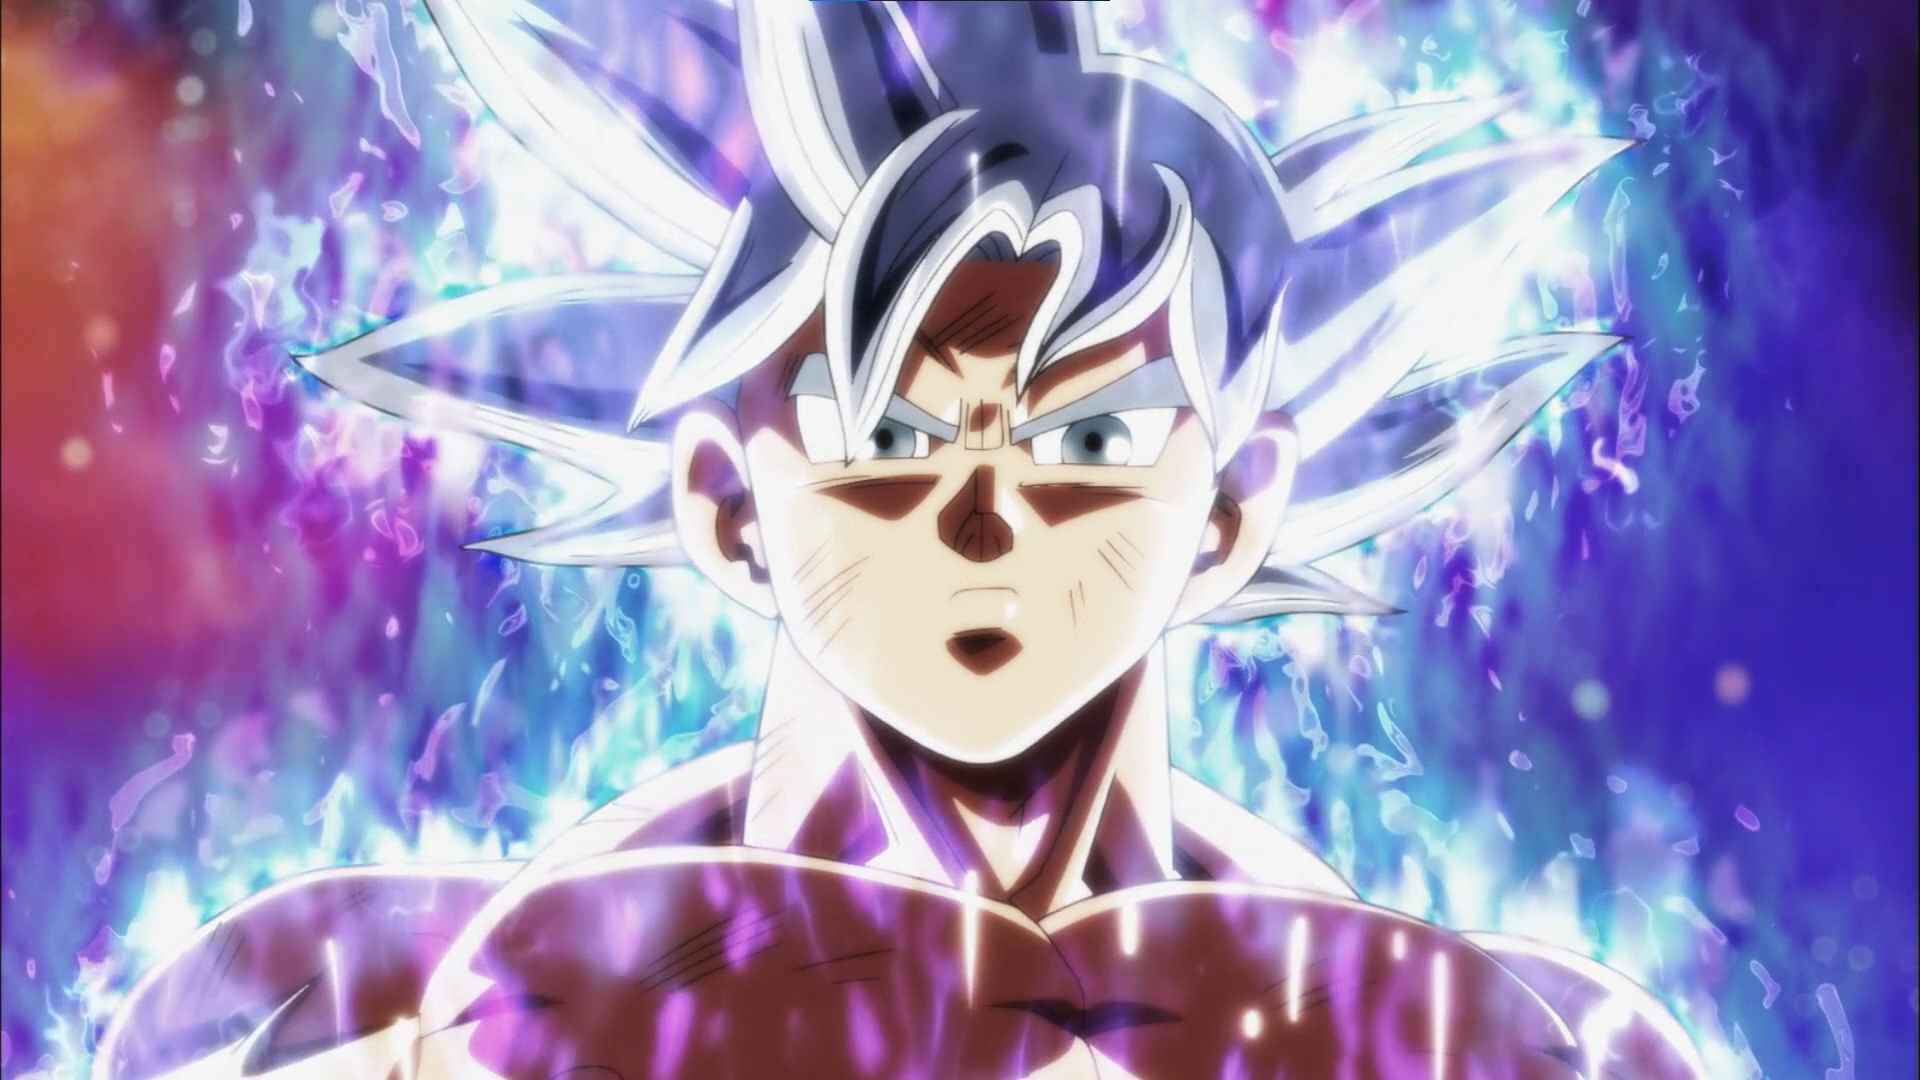 Toutes les transformations de Goku (du plus faible au plus fort dans le manga Dragon Ball)